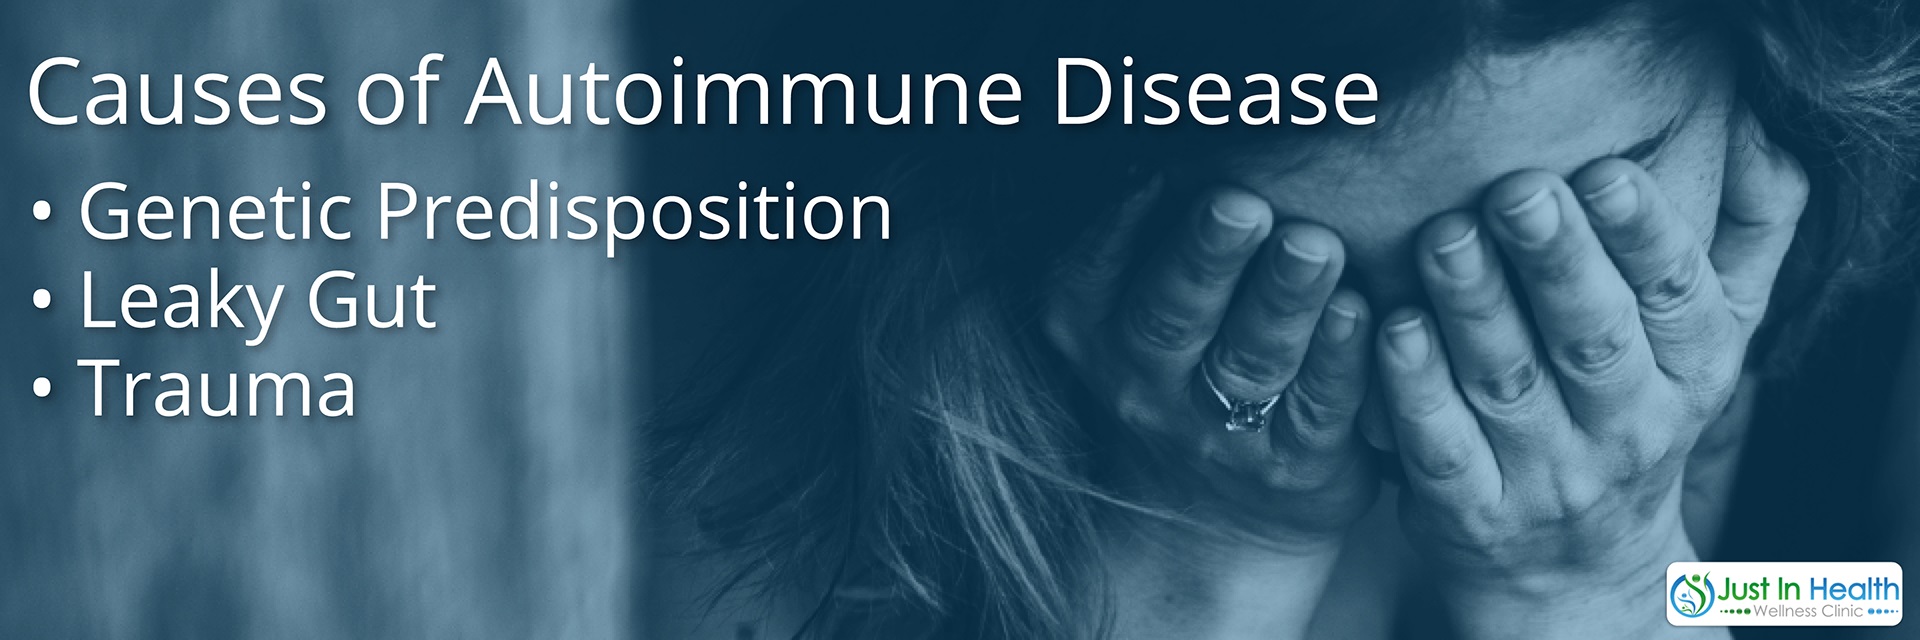 Causes of Autoimmune Disease